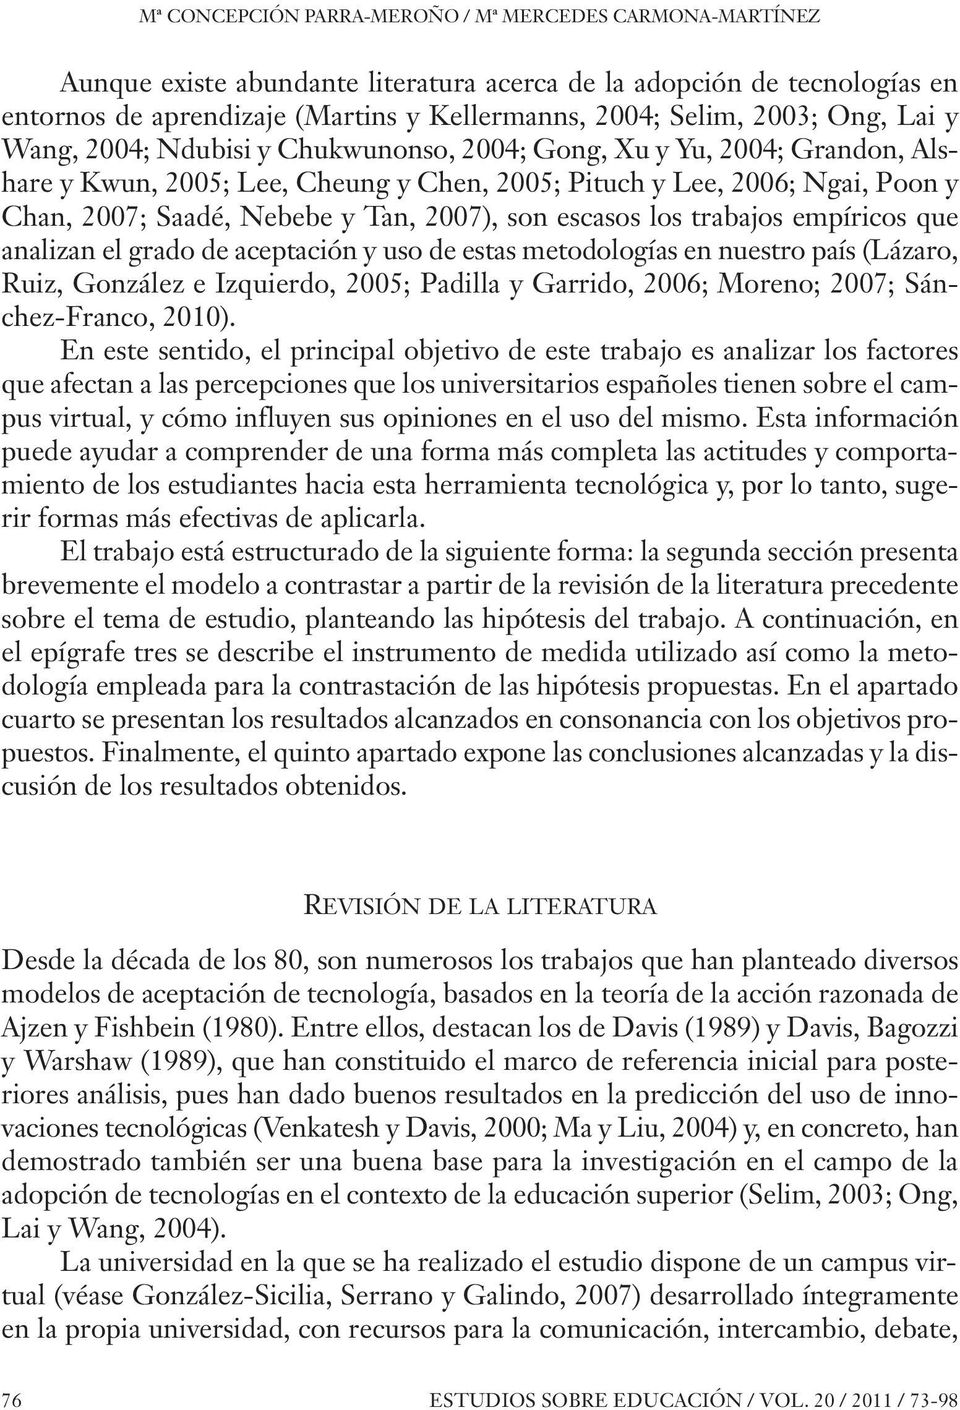 2007), son escasos los trabajos empíricos que analizan el grado de aceptación y uso de estas metodologías en nuestro país (Lázaro, Ruiz, González e Izquierdo, 2005; Padilla y Garrido, 2006; Moreno;